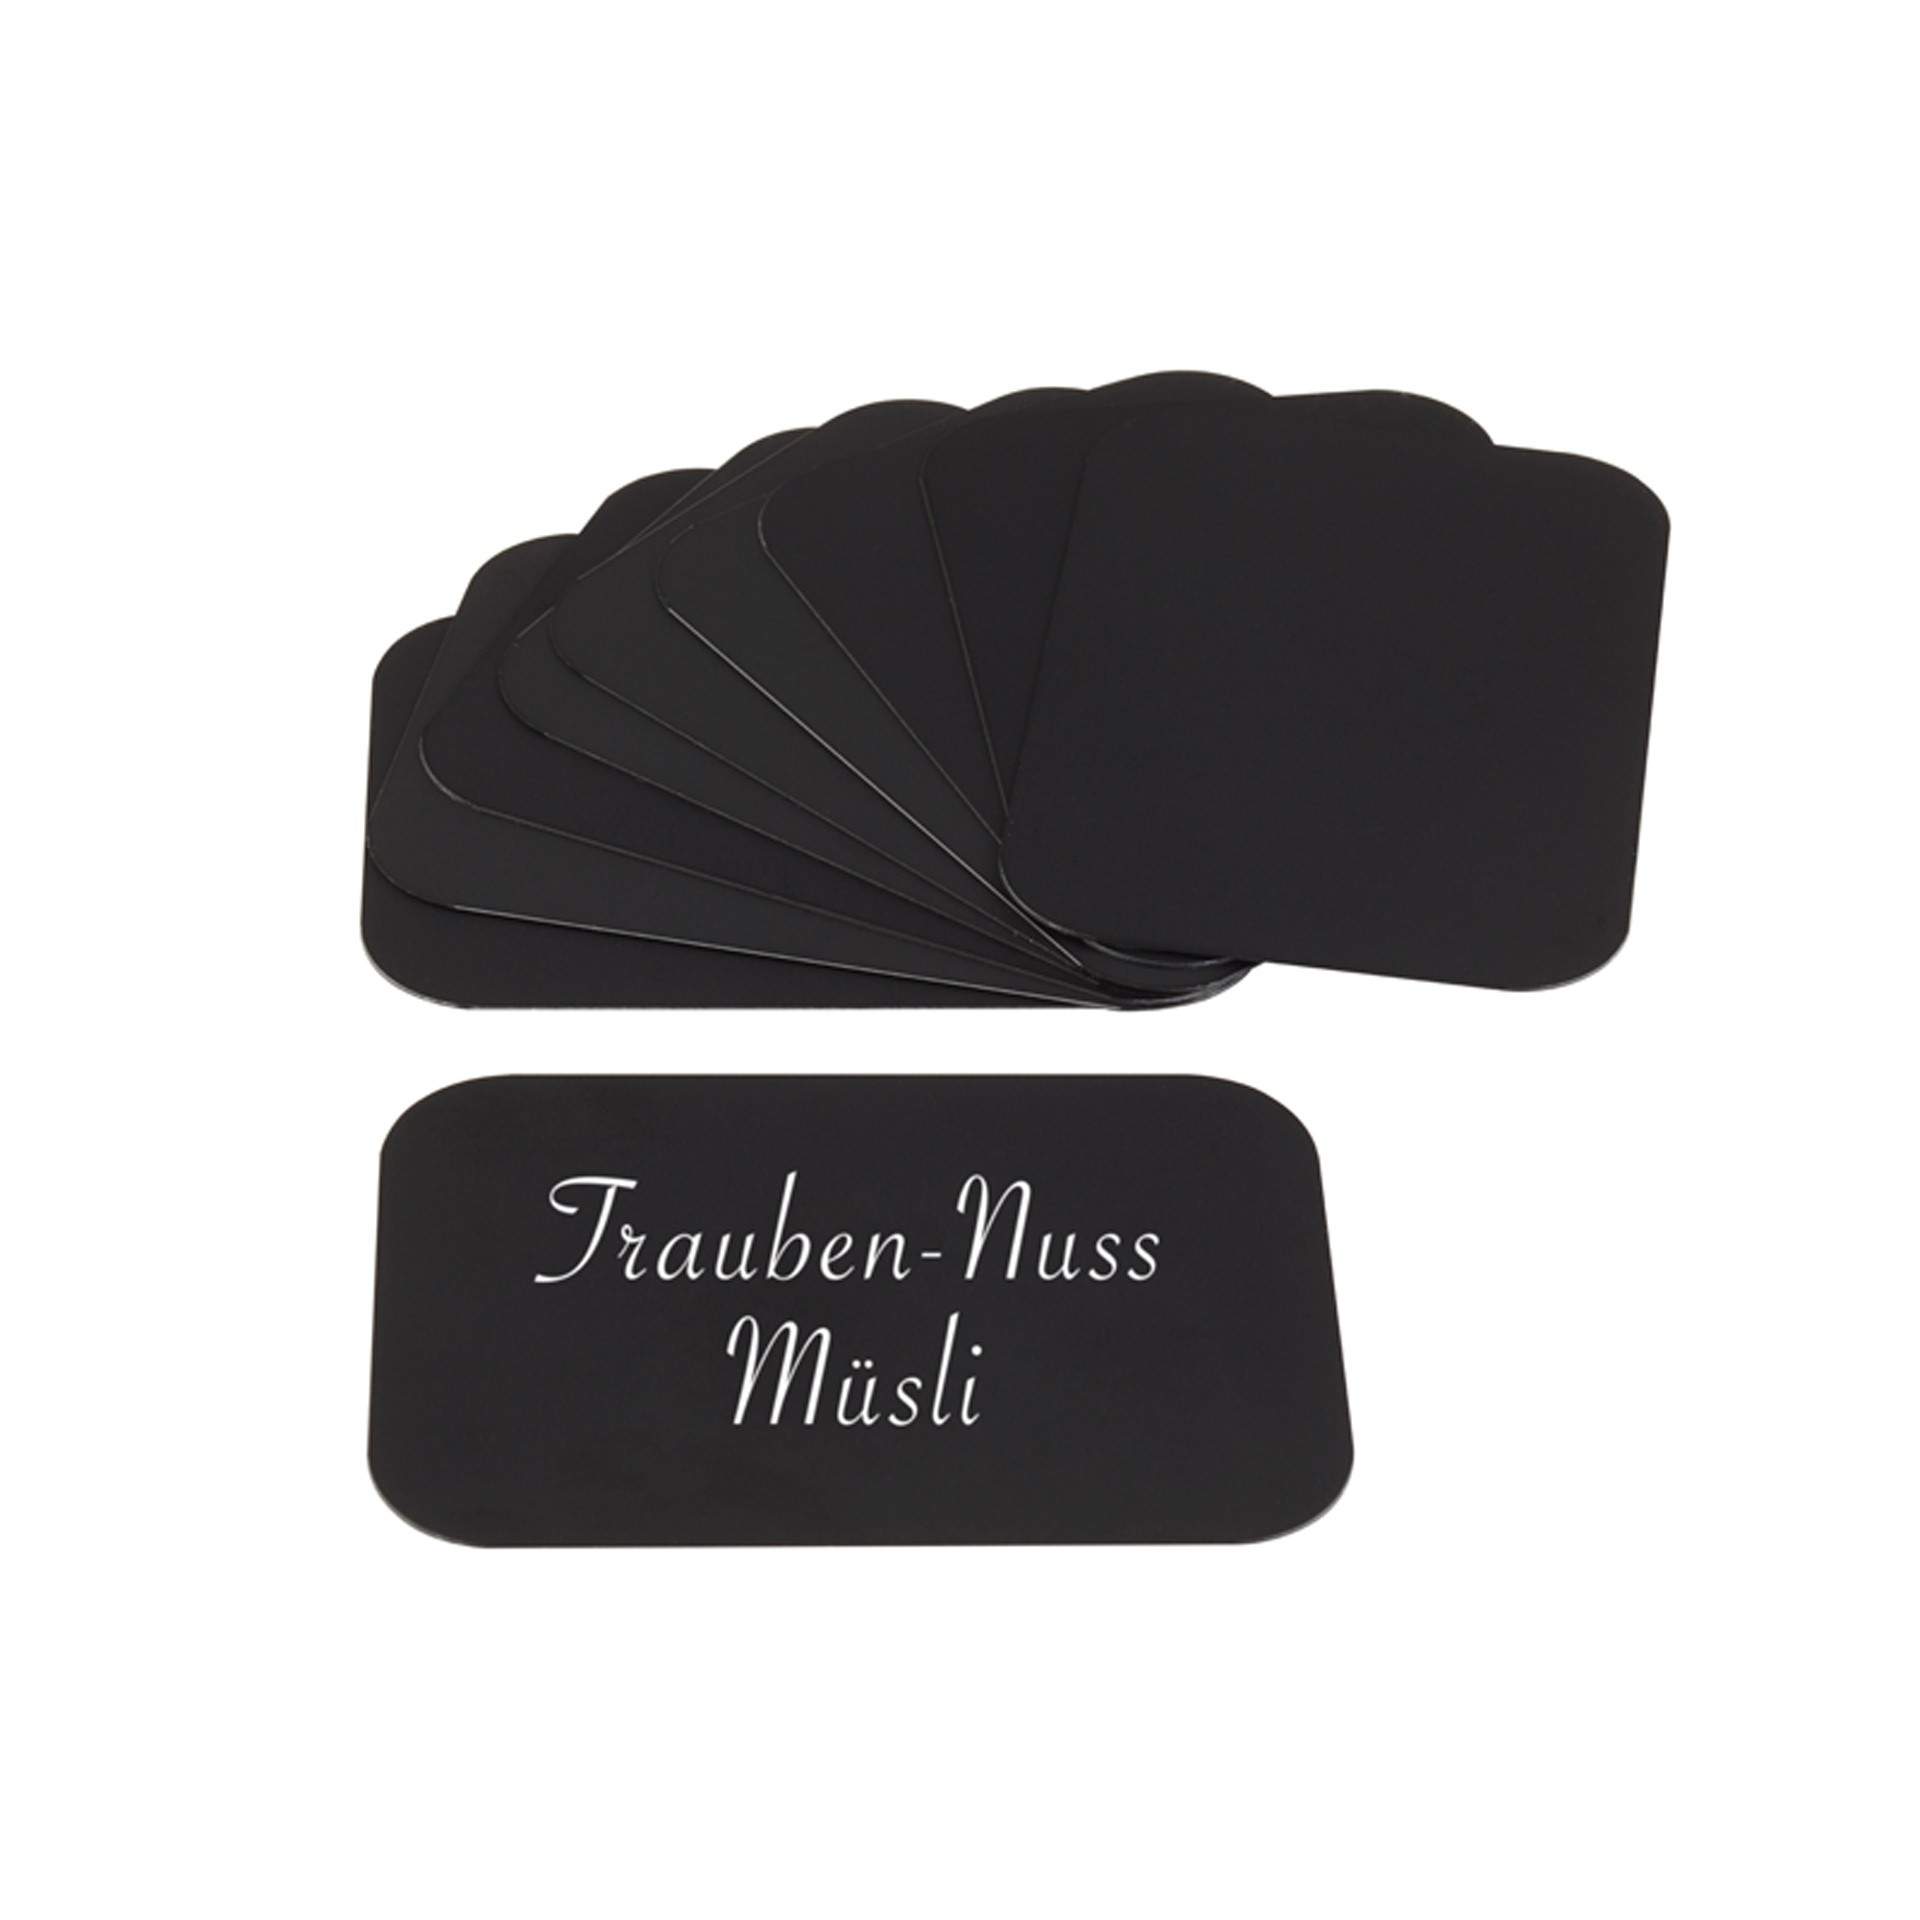 Beschriftungskarten - 10er Set  - schwarz - Abm. 7,5 x 5,0 x 0,4 cm - PVC - 37-B